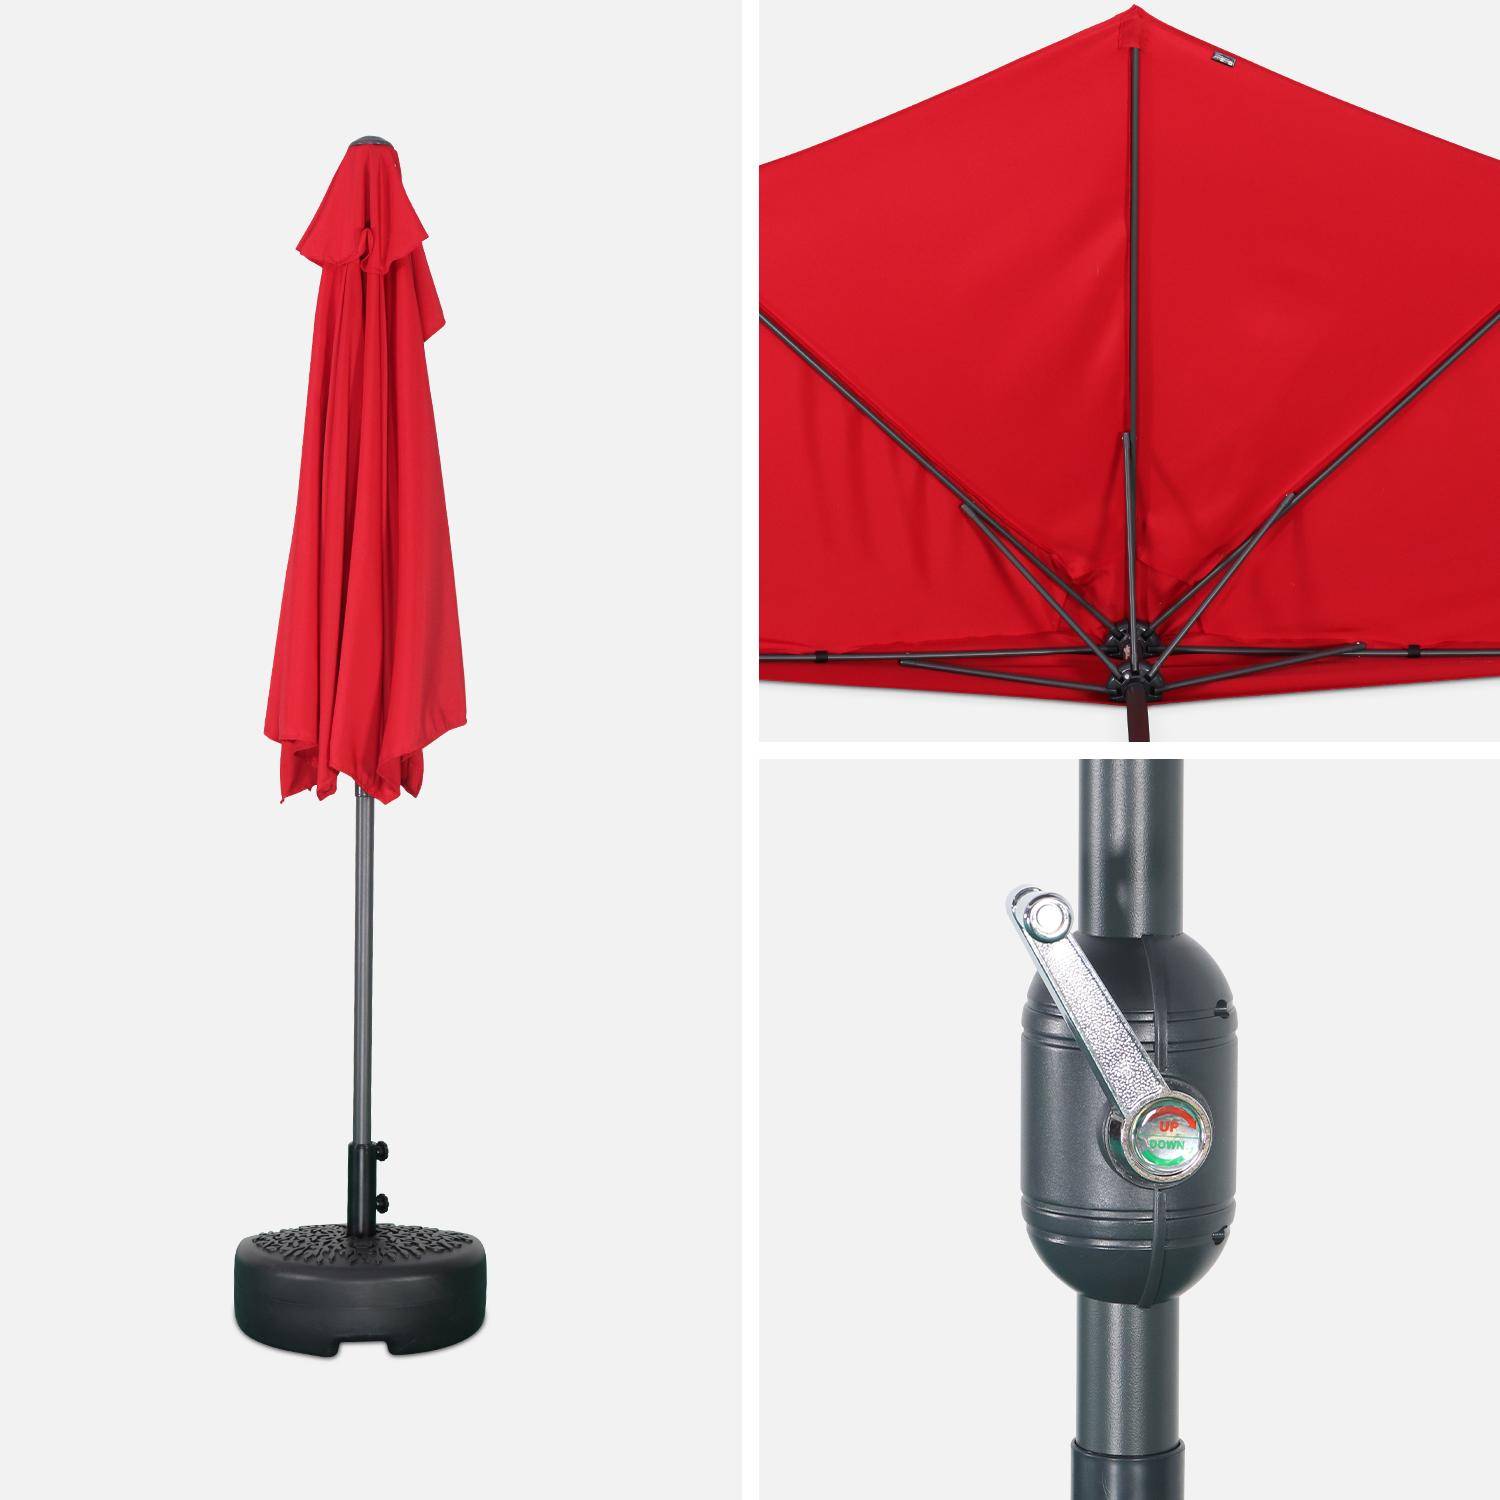  Parasol para balcón Ø250cm  – CALVI – Pequeño parasol recto, mástil en aluminio con manivela, tela color rojo,sweeek,Photo5